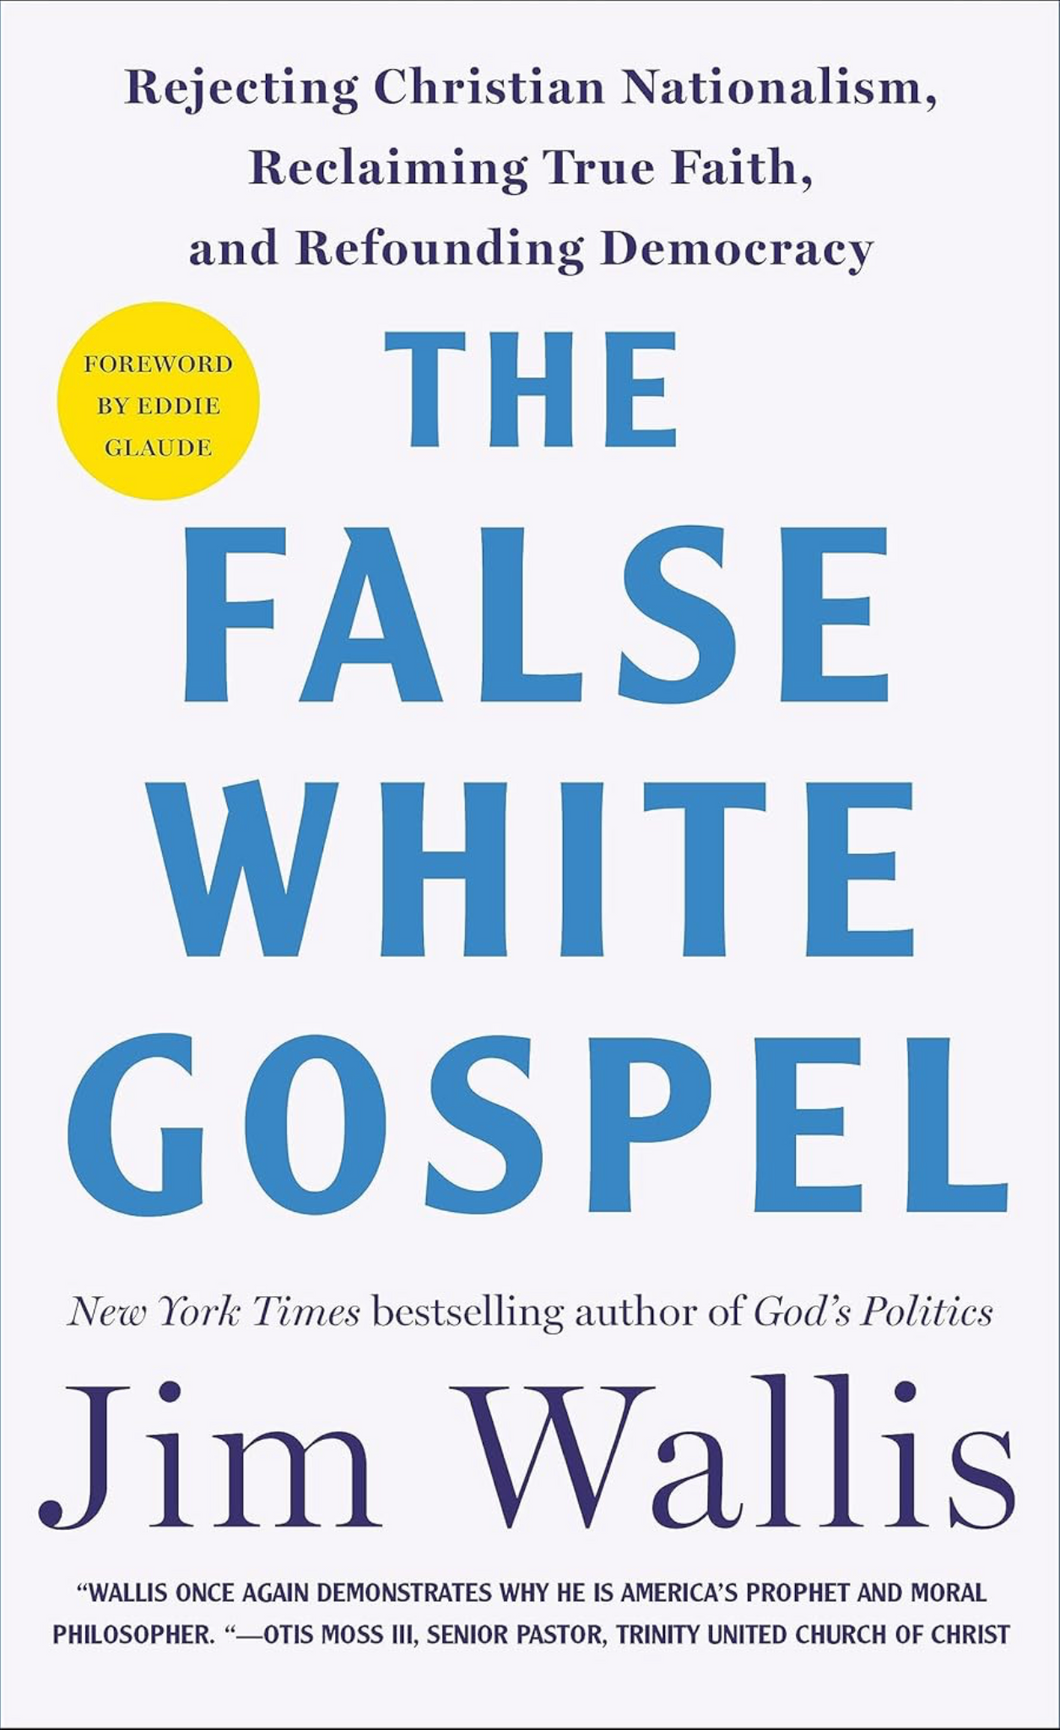 The False White Gospel